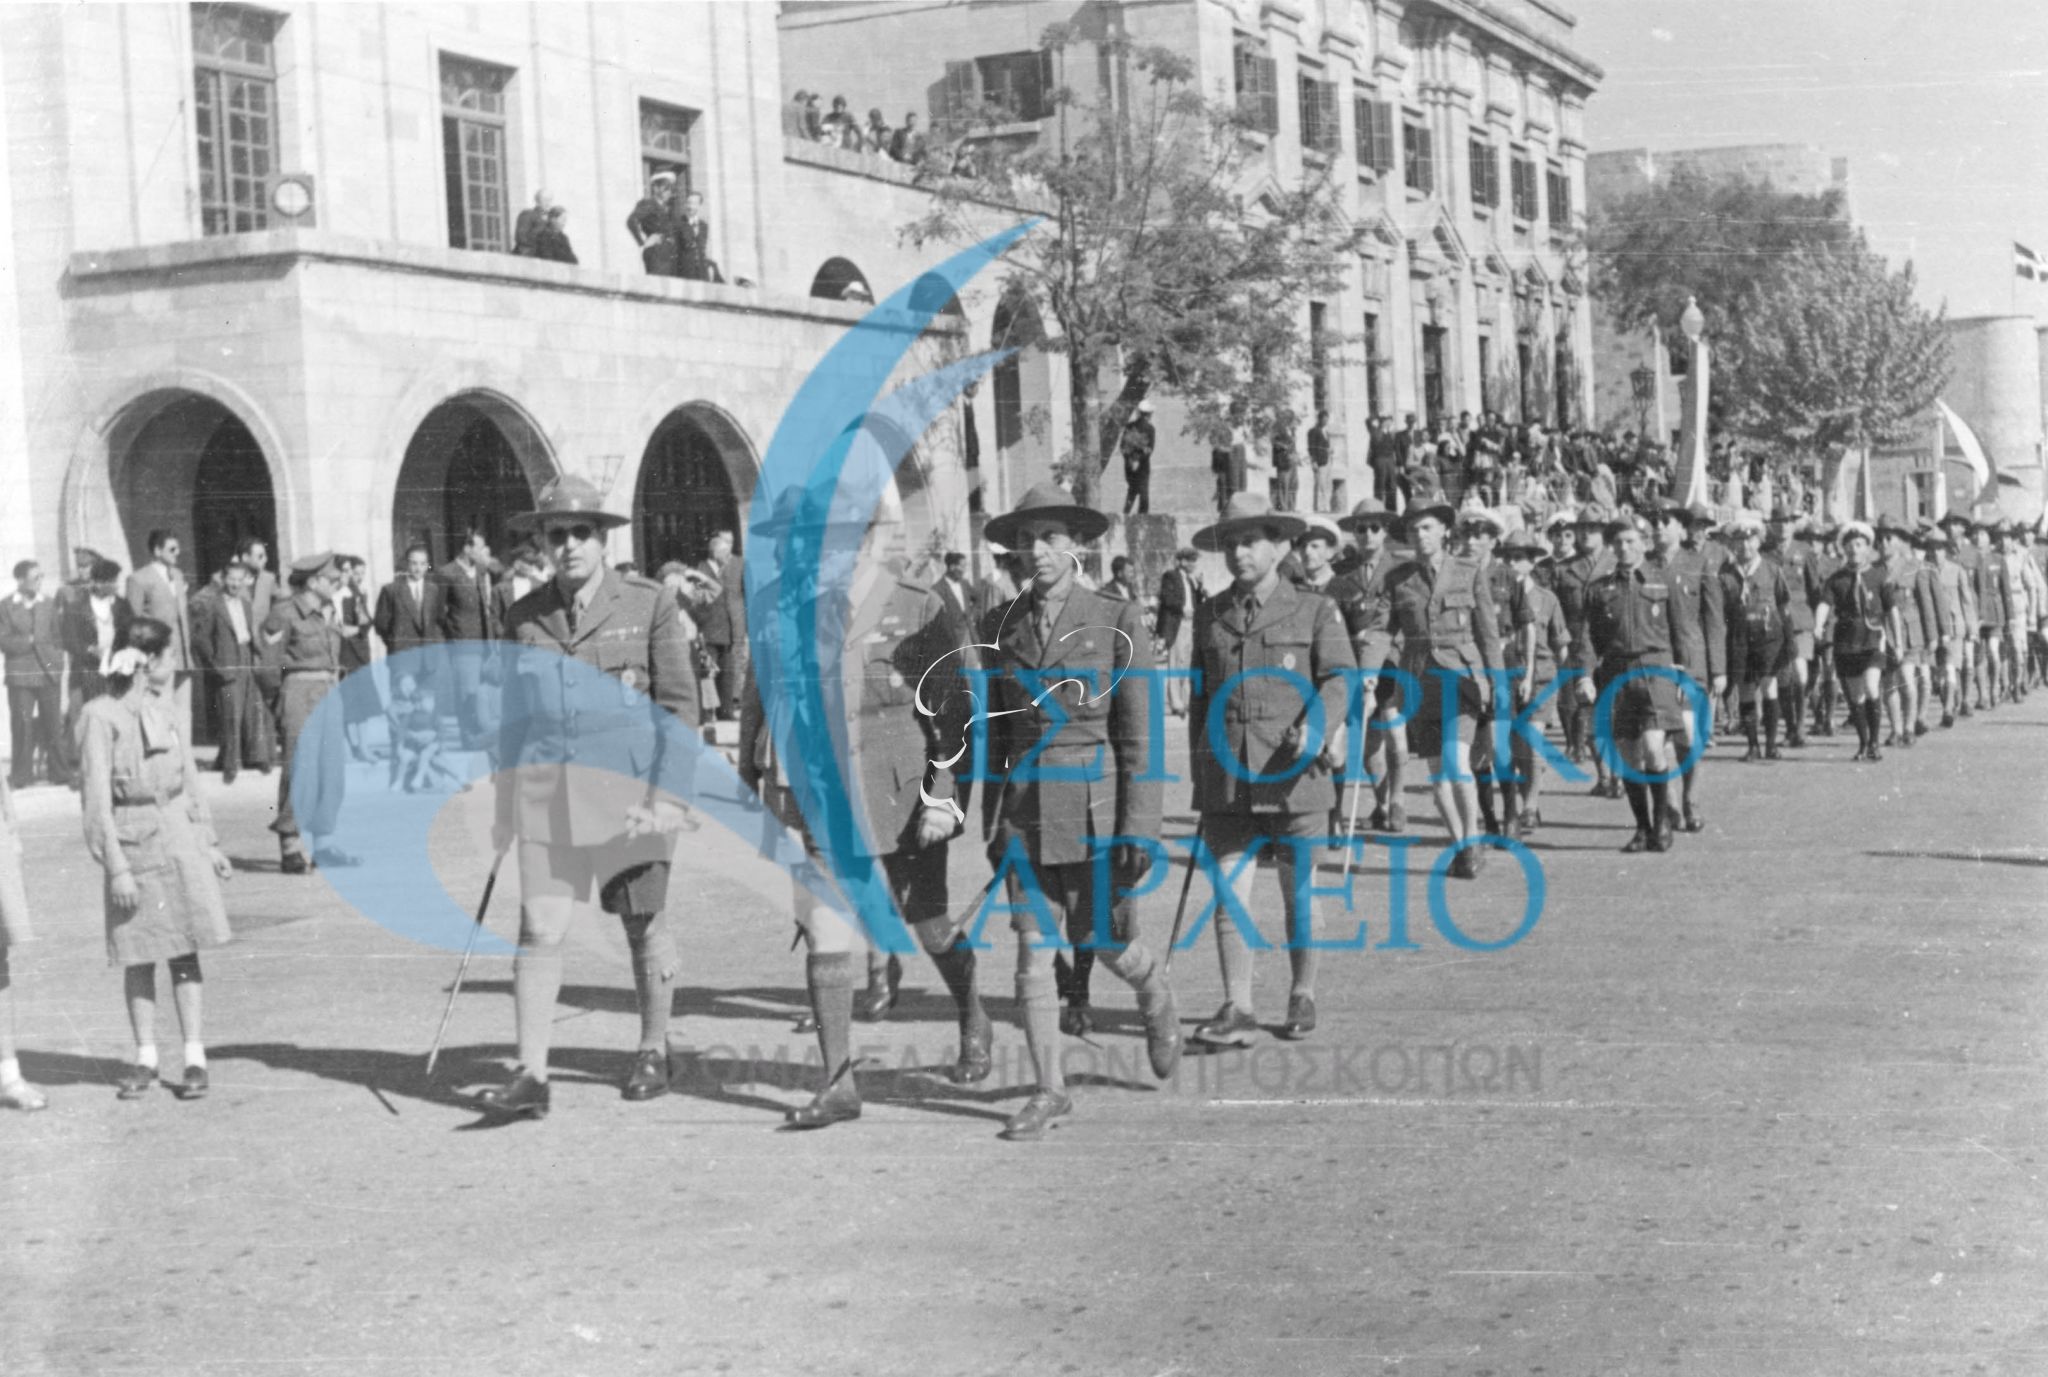 Παρέλαση προσκόπων στην Ρόδο το 1948 επ' ευκαιρίας της ενσωμάτωσης της Δωδεκανήσσου στην Ελλάδα. Διακρίνεται ο Δ. Αλεξάτος.